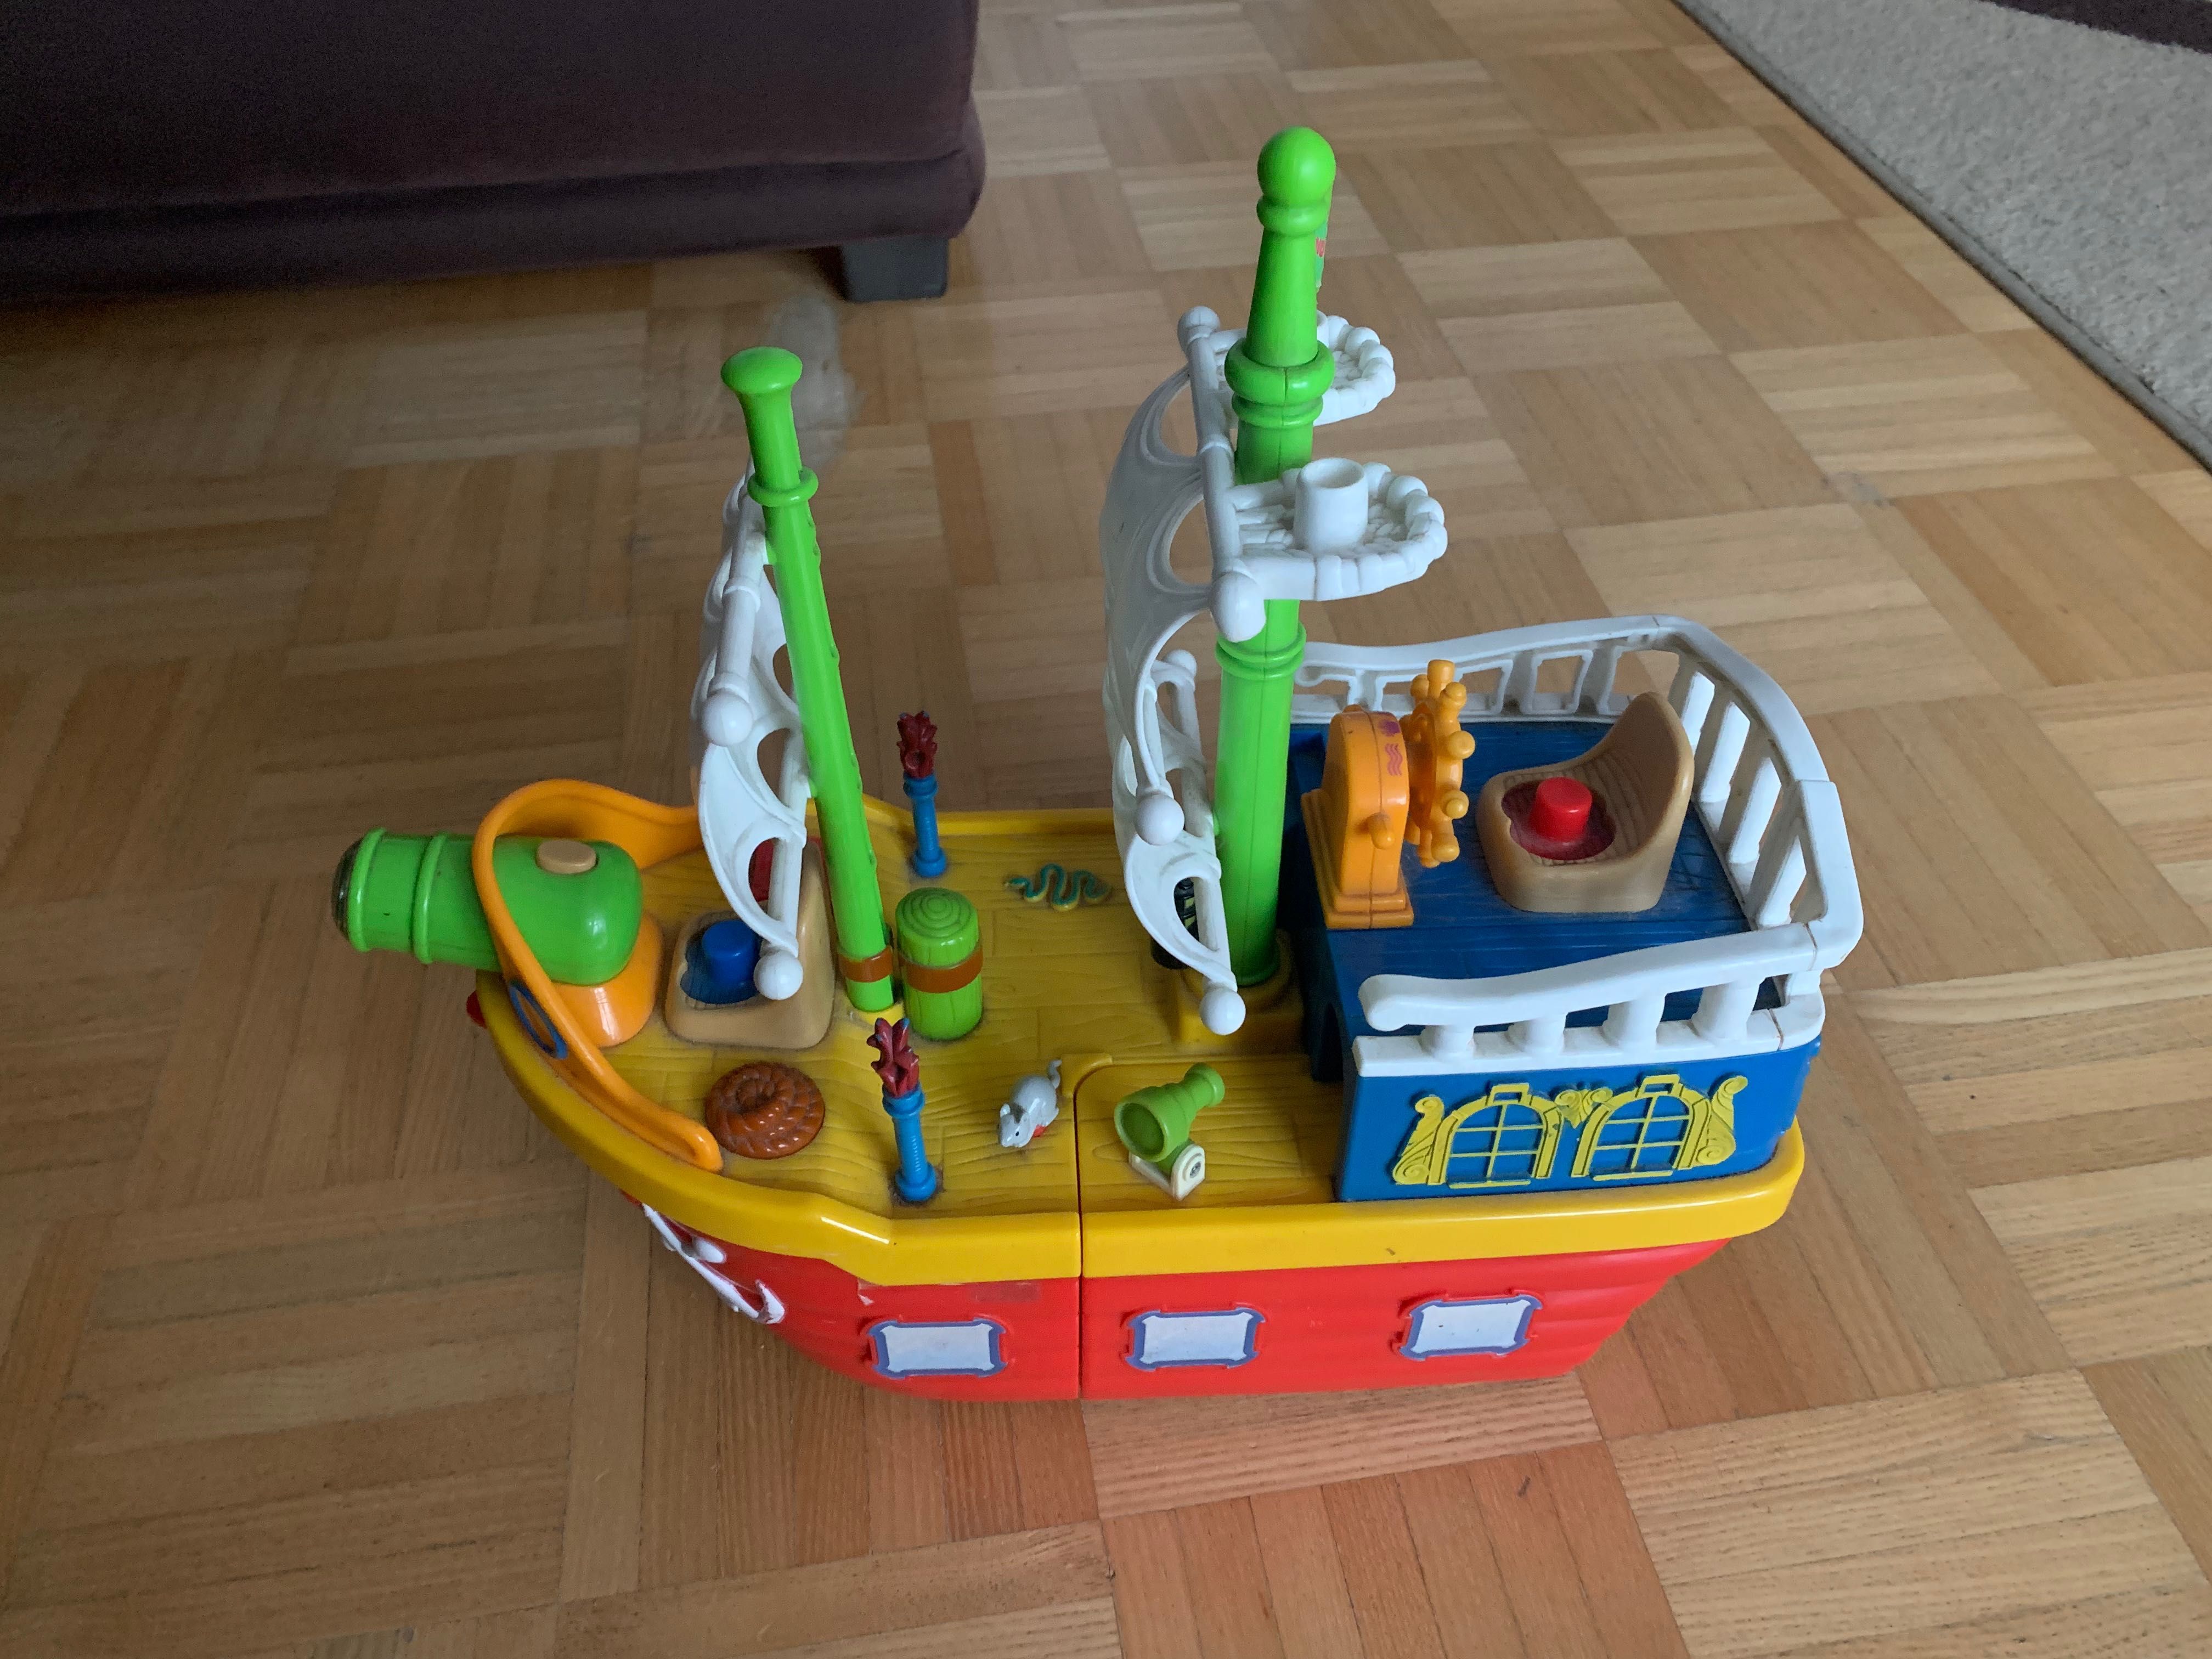 Statek piracki dumel, statek dla dzieci, zabawa piraci